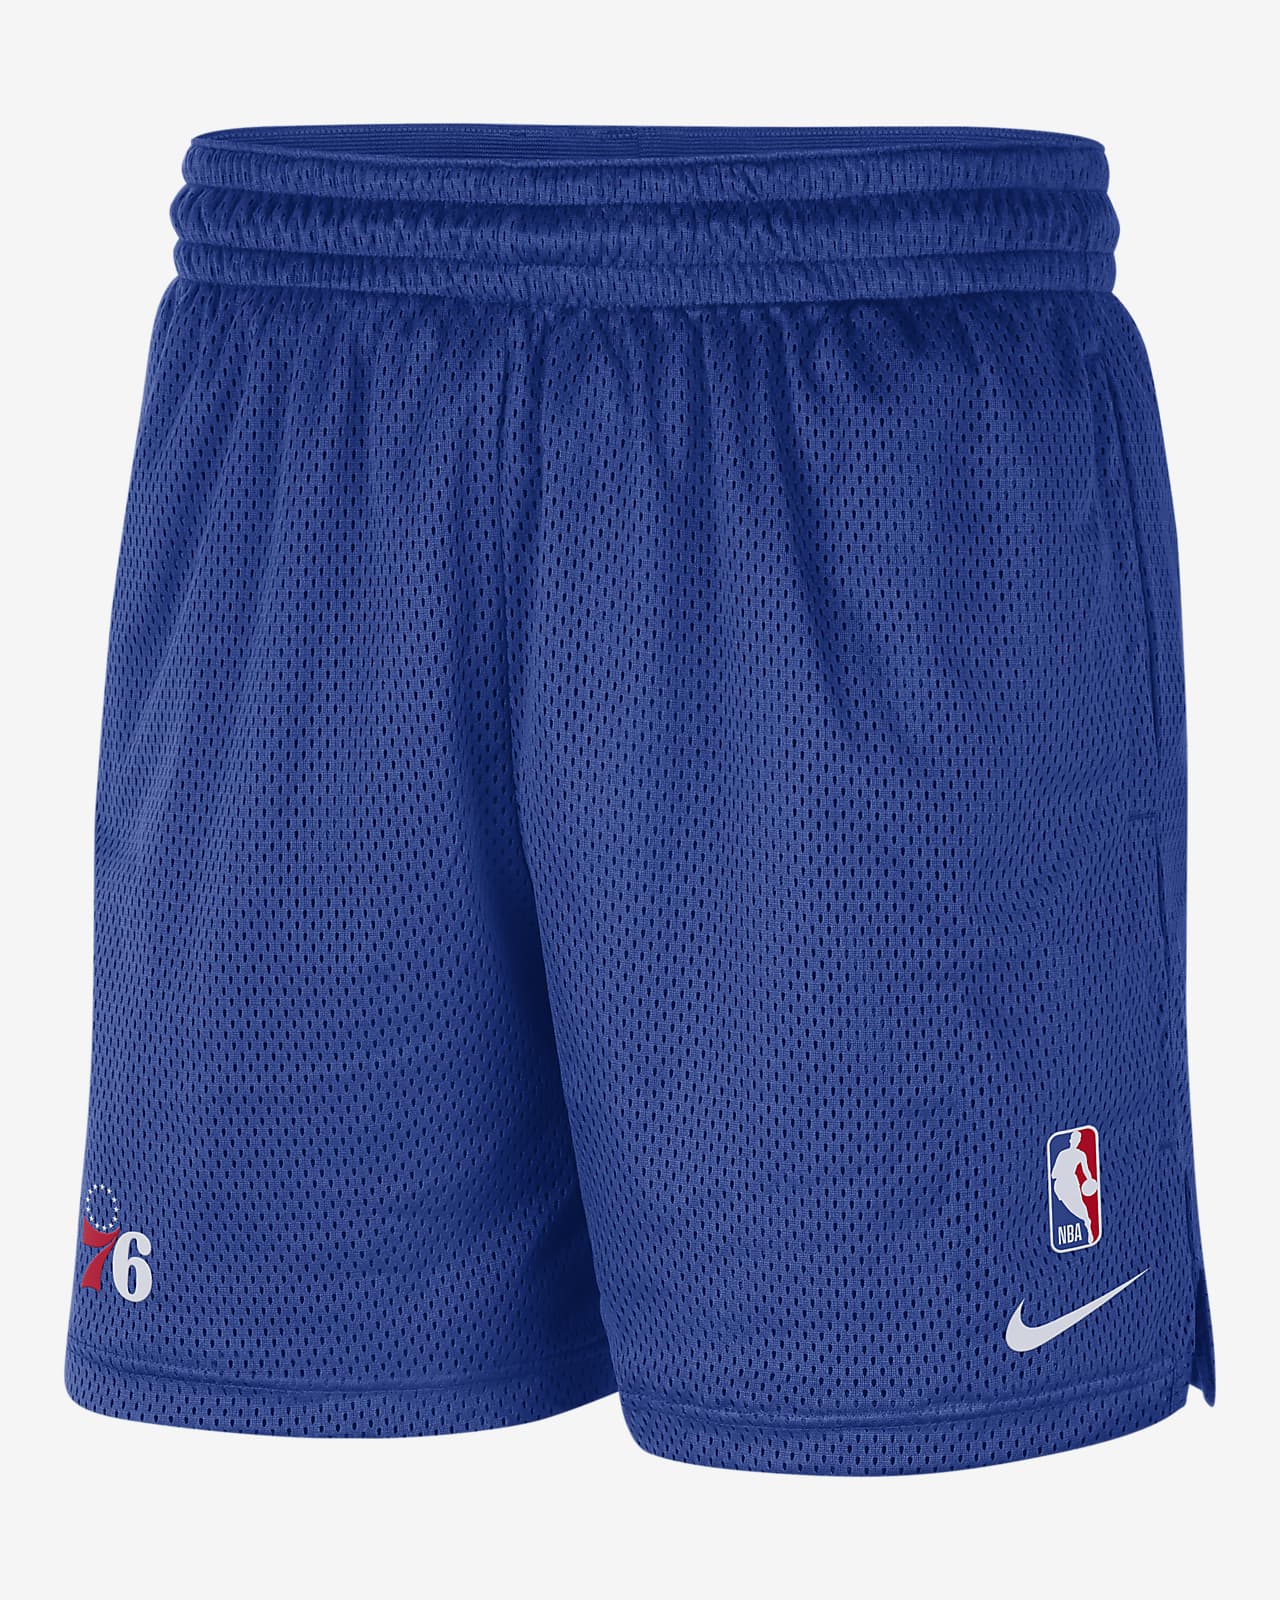 Philadelphia 76ers Men's Nike NBA Shorts